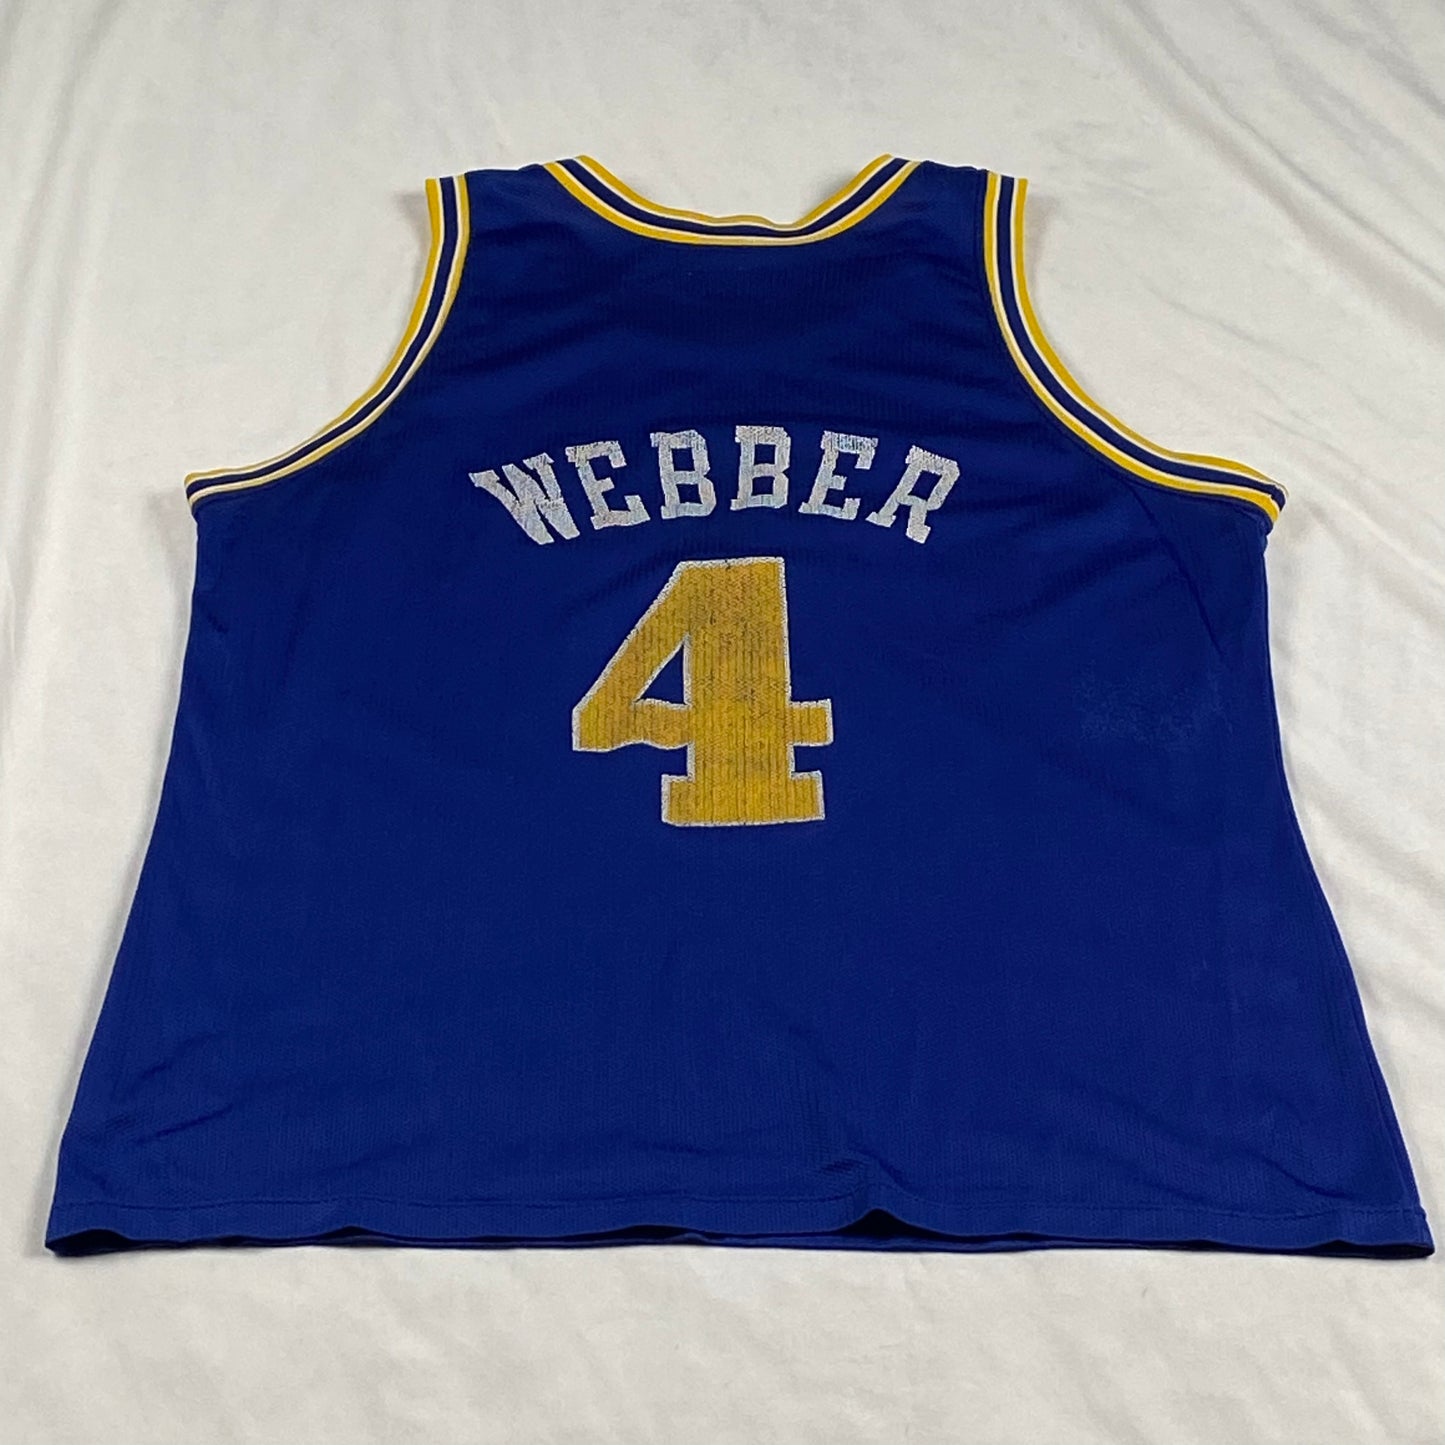 Golden State Warriors Chris Webber Champion Replica NBA Basketball Jersey